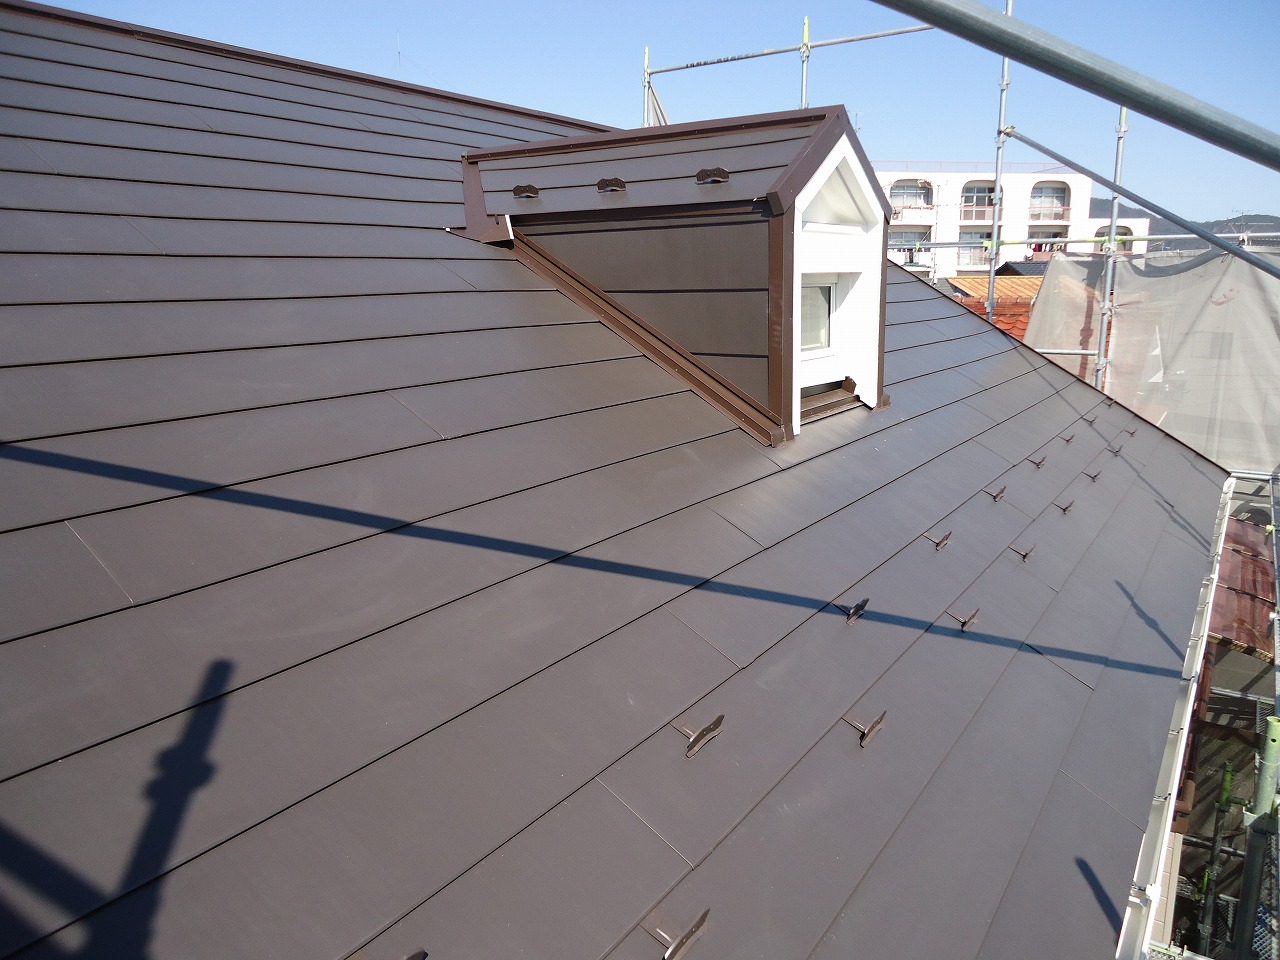 屋根はカバー工法で施工しています。
その為、高耐久な上に断熱・遮音・防火・耐震の効果もありとても安心できる屋根になりました。